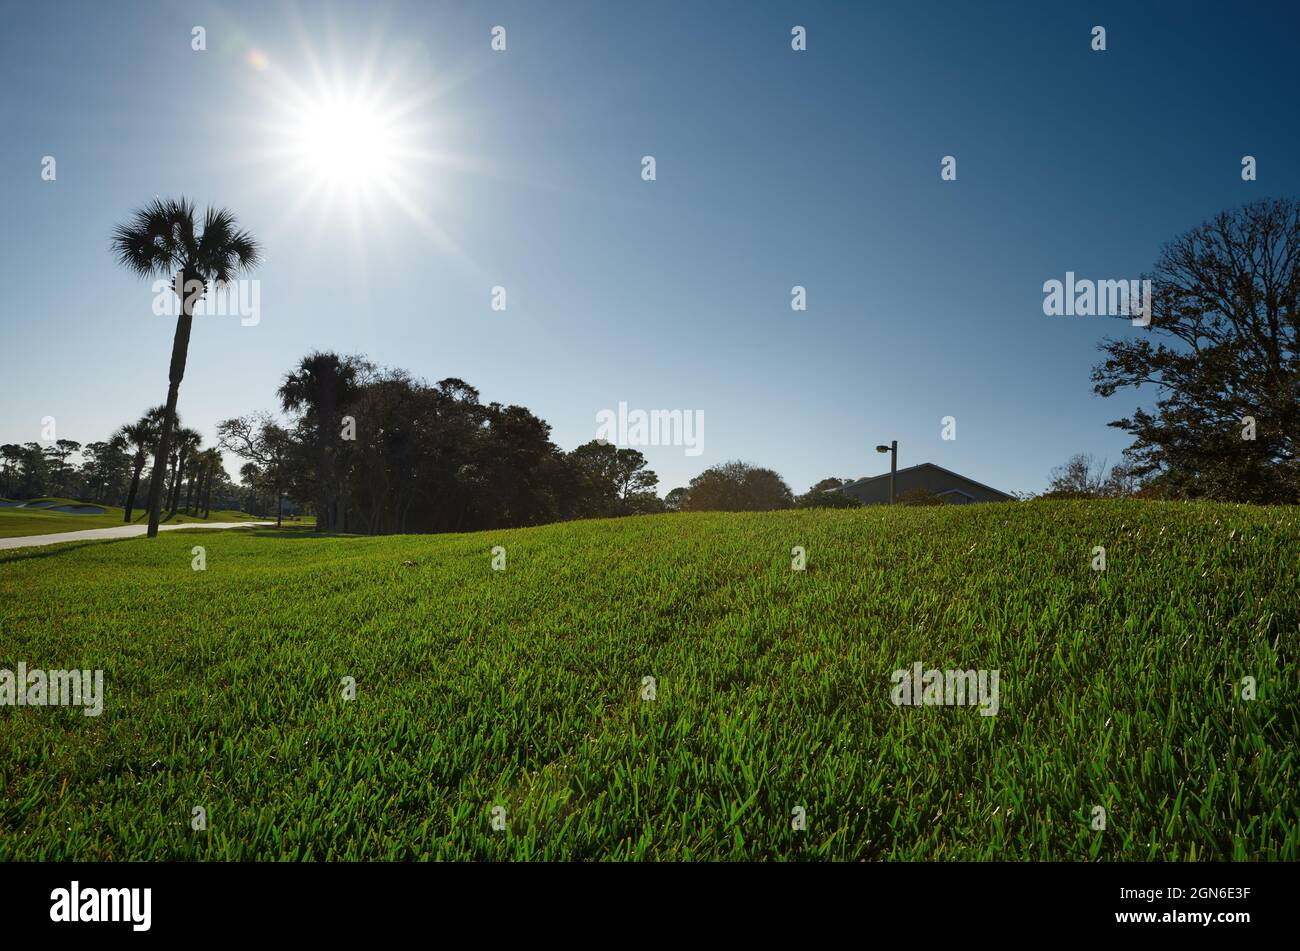 Grasbewachsene Gasse mit Palmen und einem Dach Stockfoto